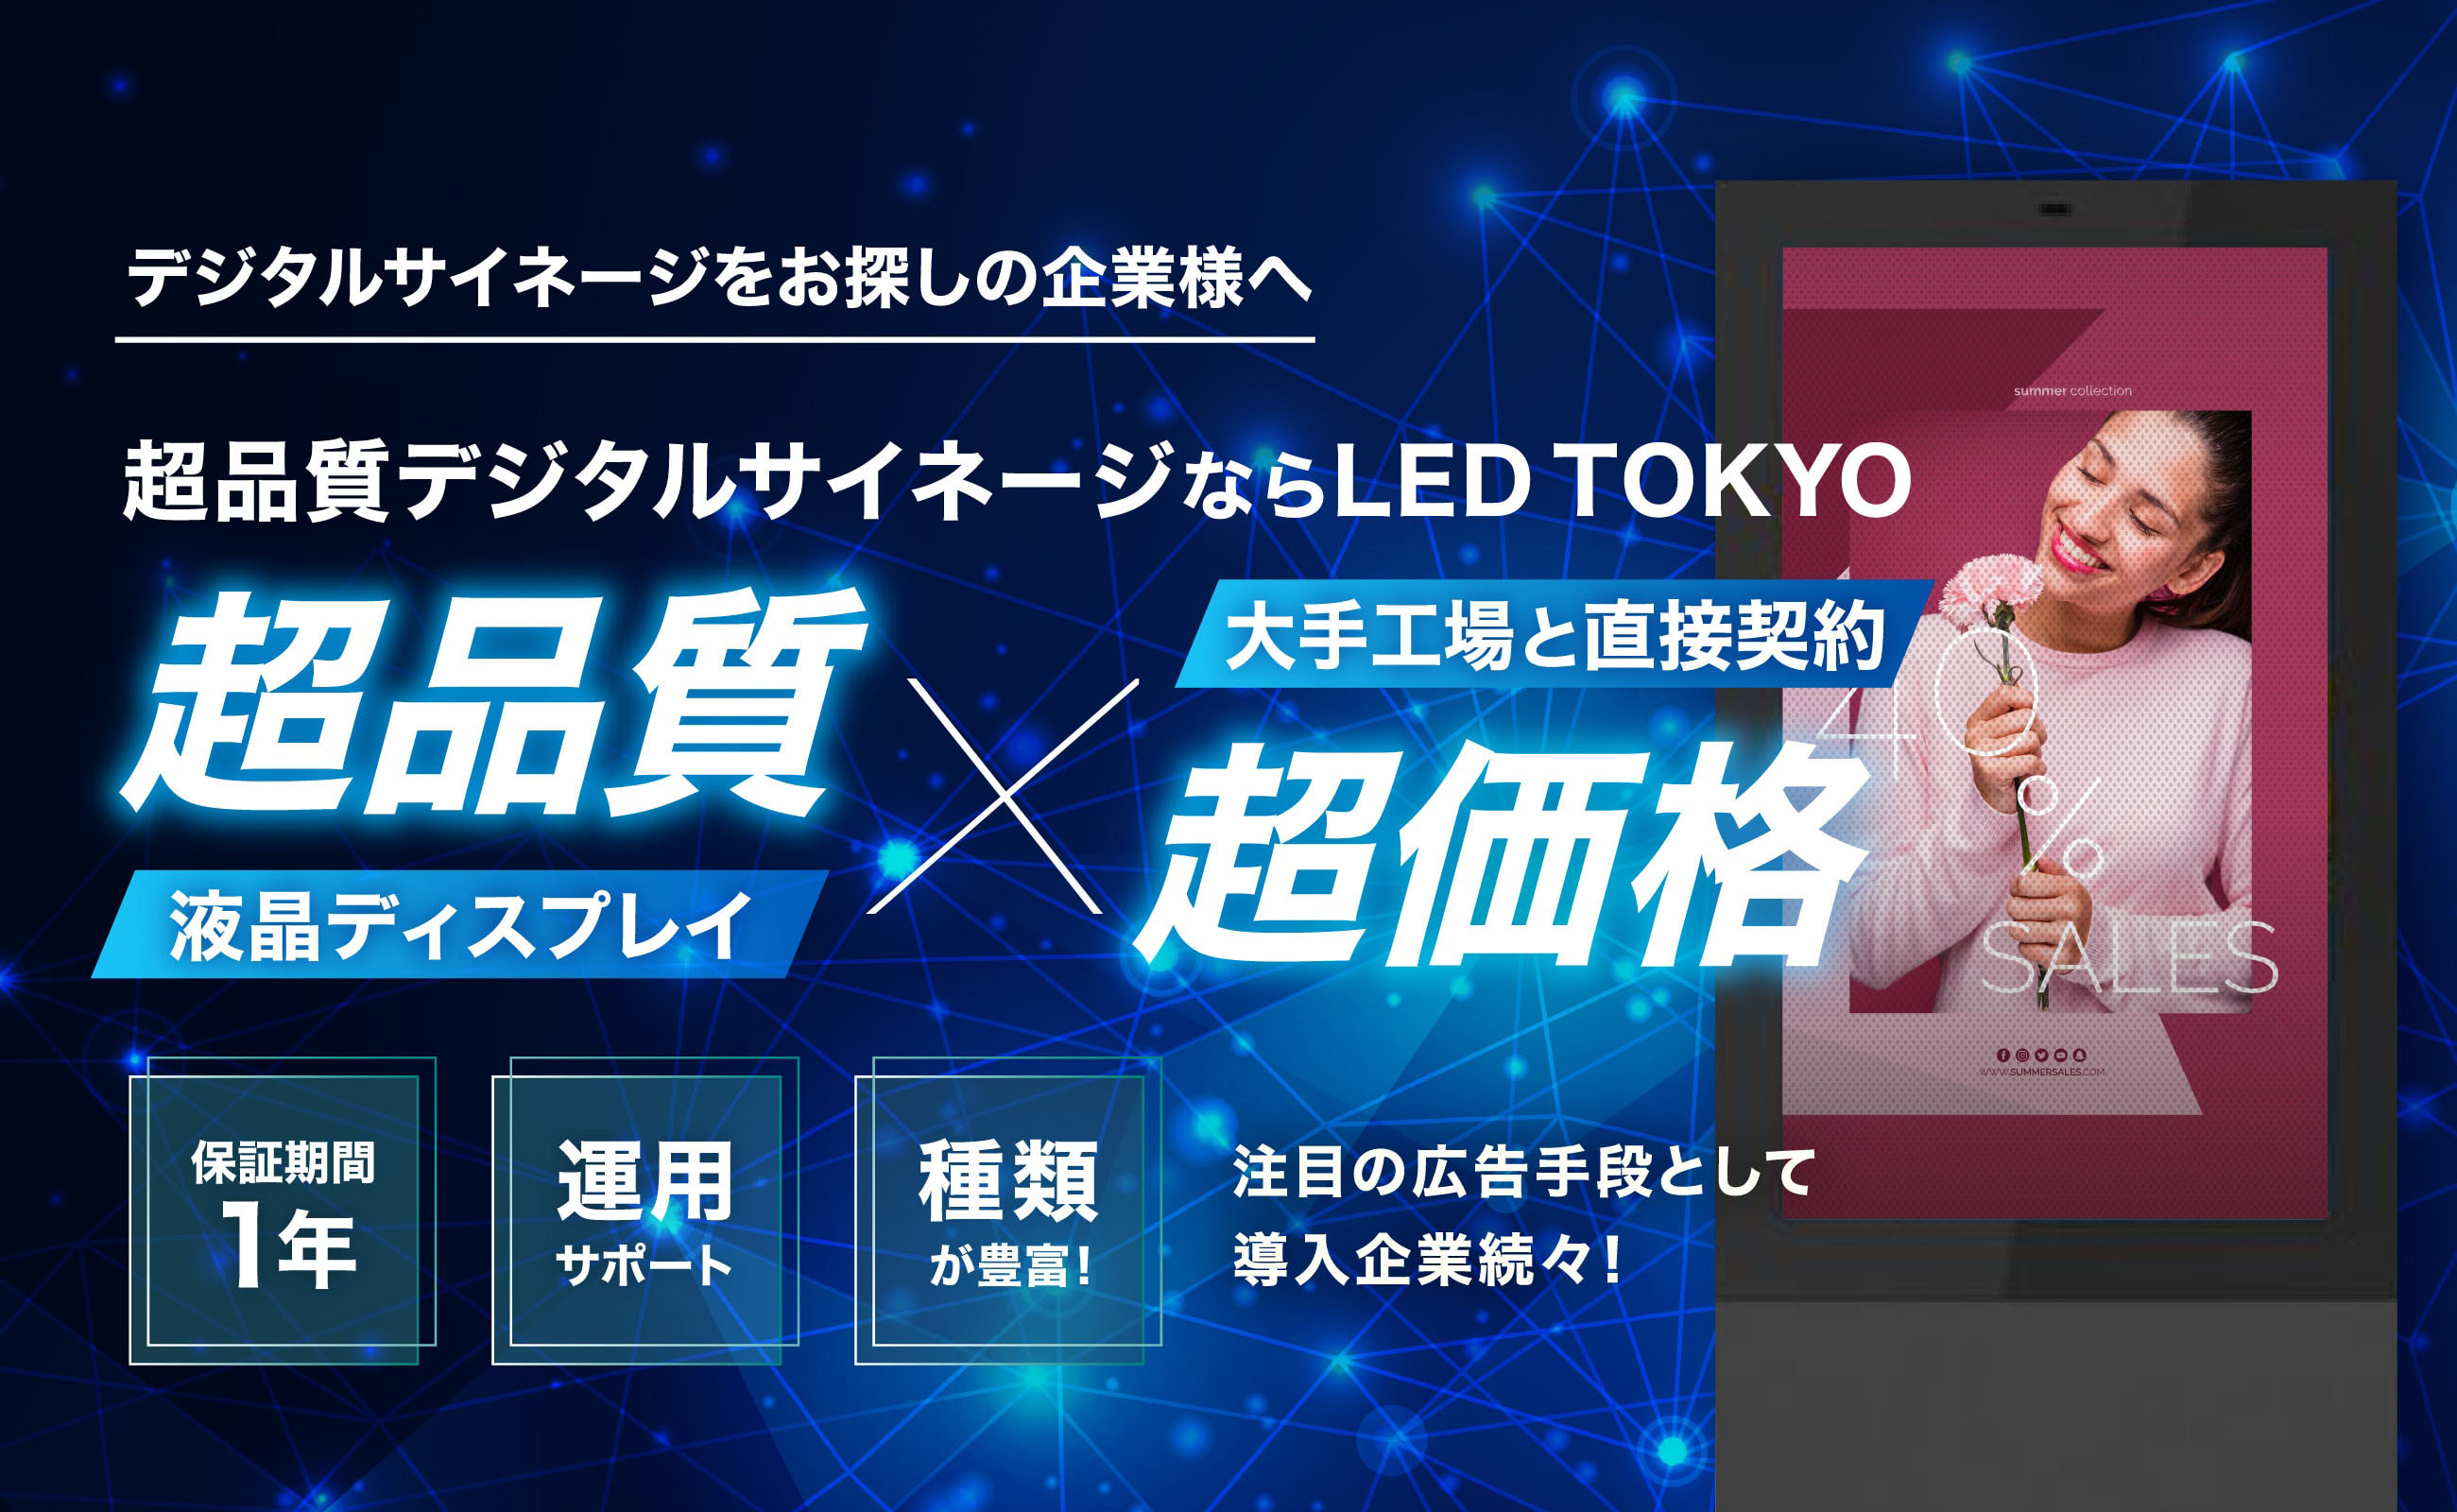 デジタルサイネージをお探しの企業様へ 超品質デジタルサイネージならLED TOKYO 超品質液晶ディスプレイ×超価格大手工場と直接契約 注目の広告手段として導入企業続々！